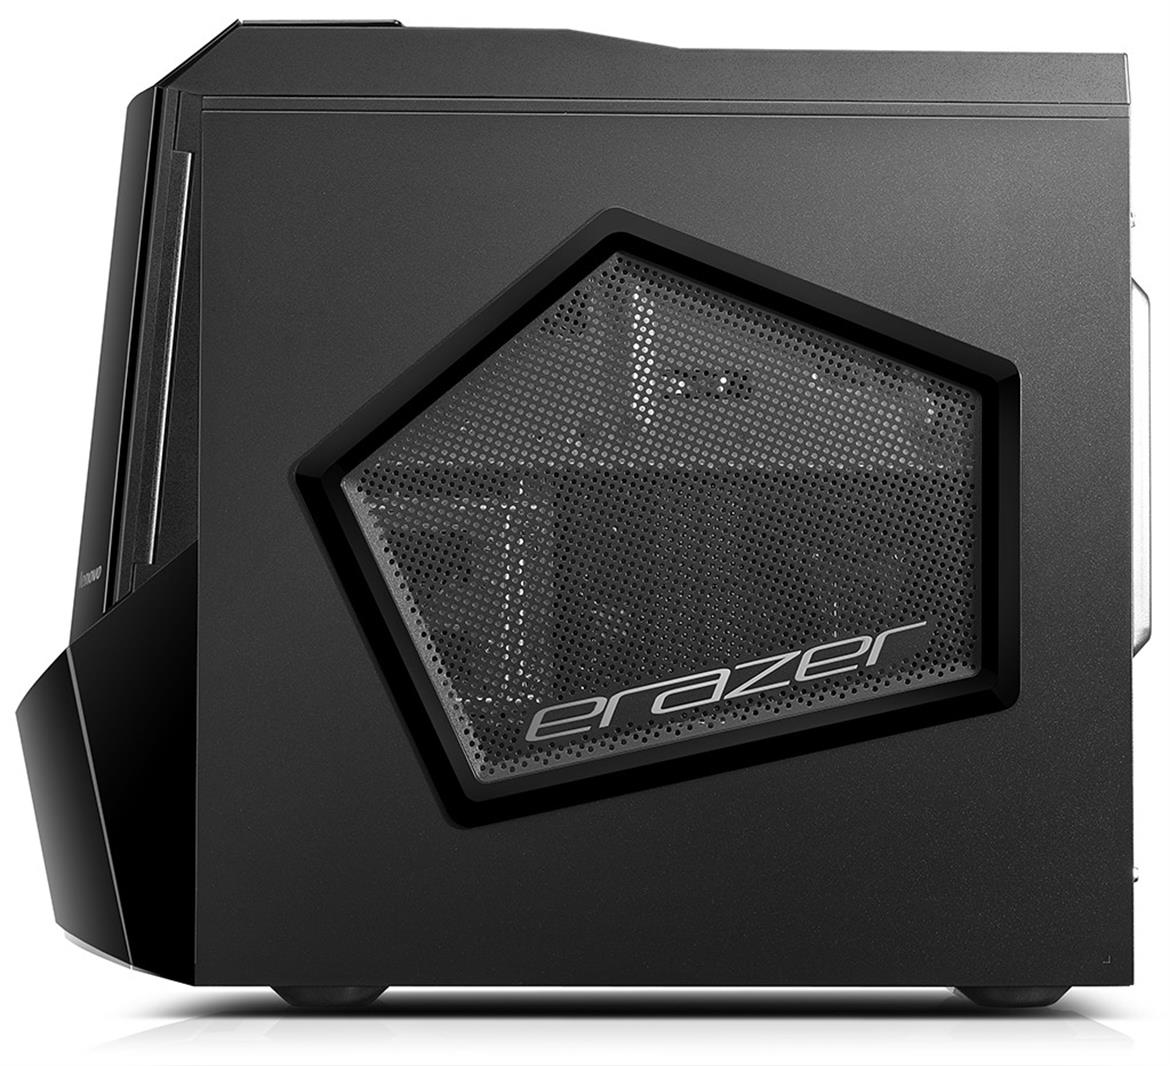 Lenovo Erazer x510 Gaming PC Review